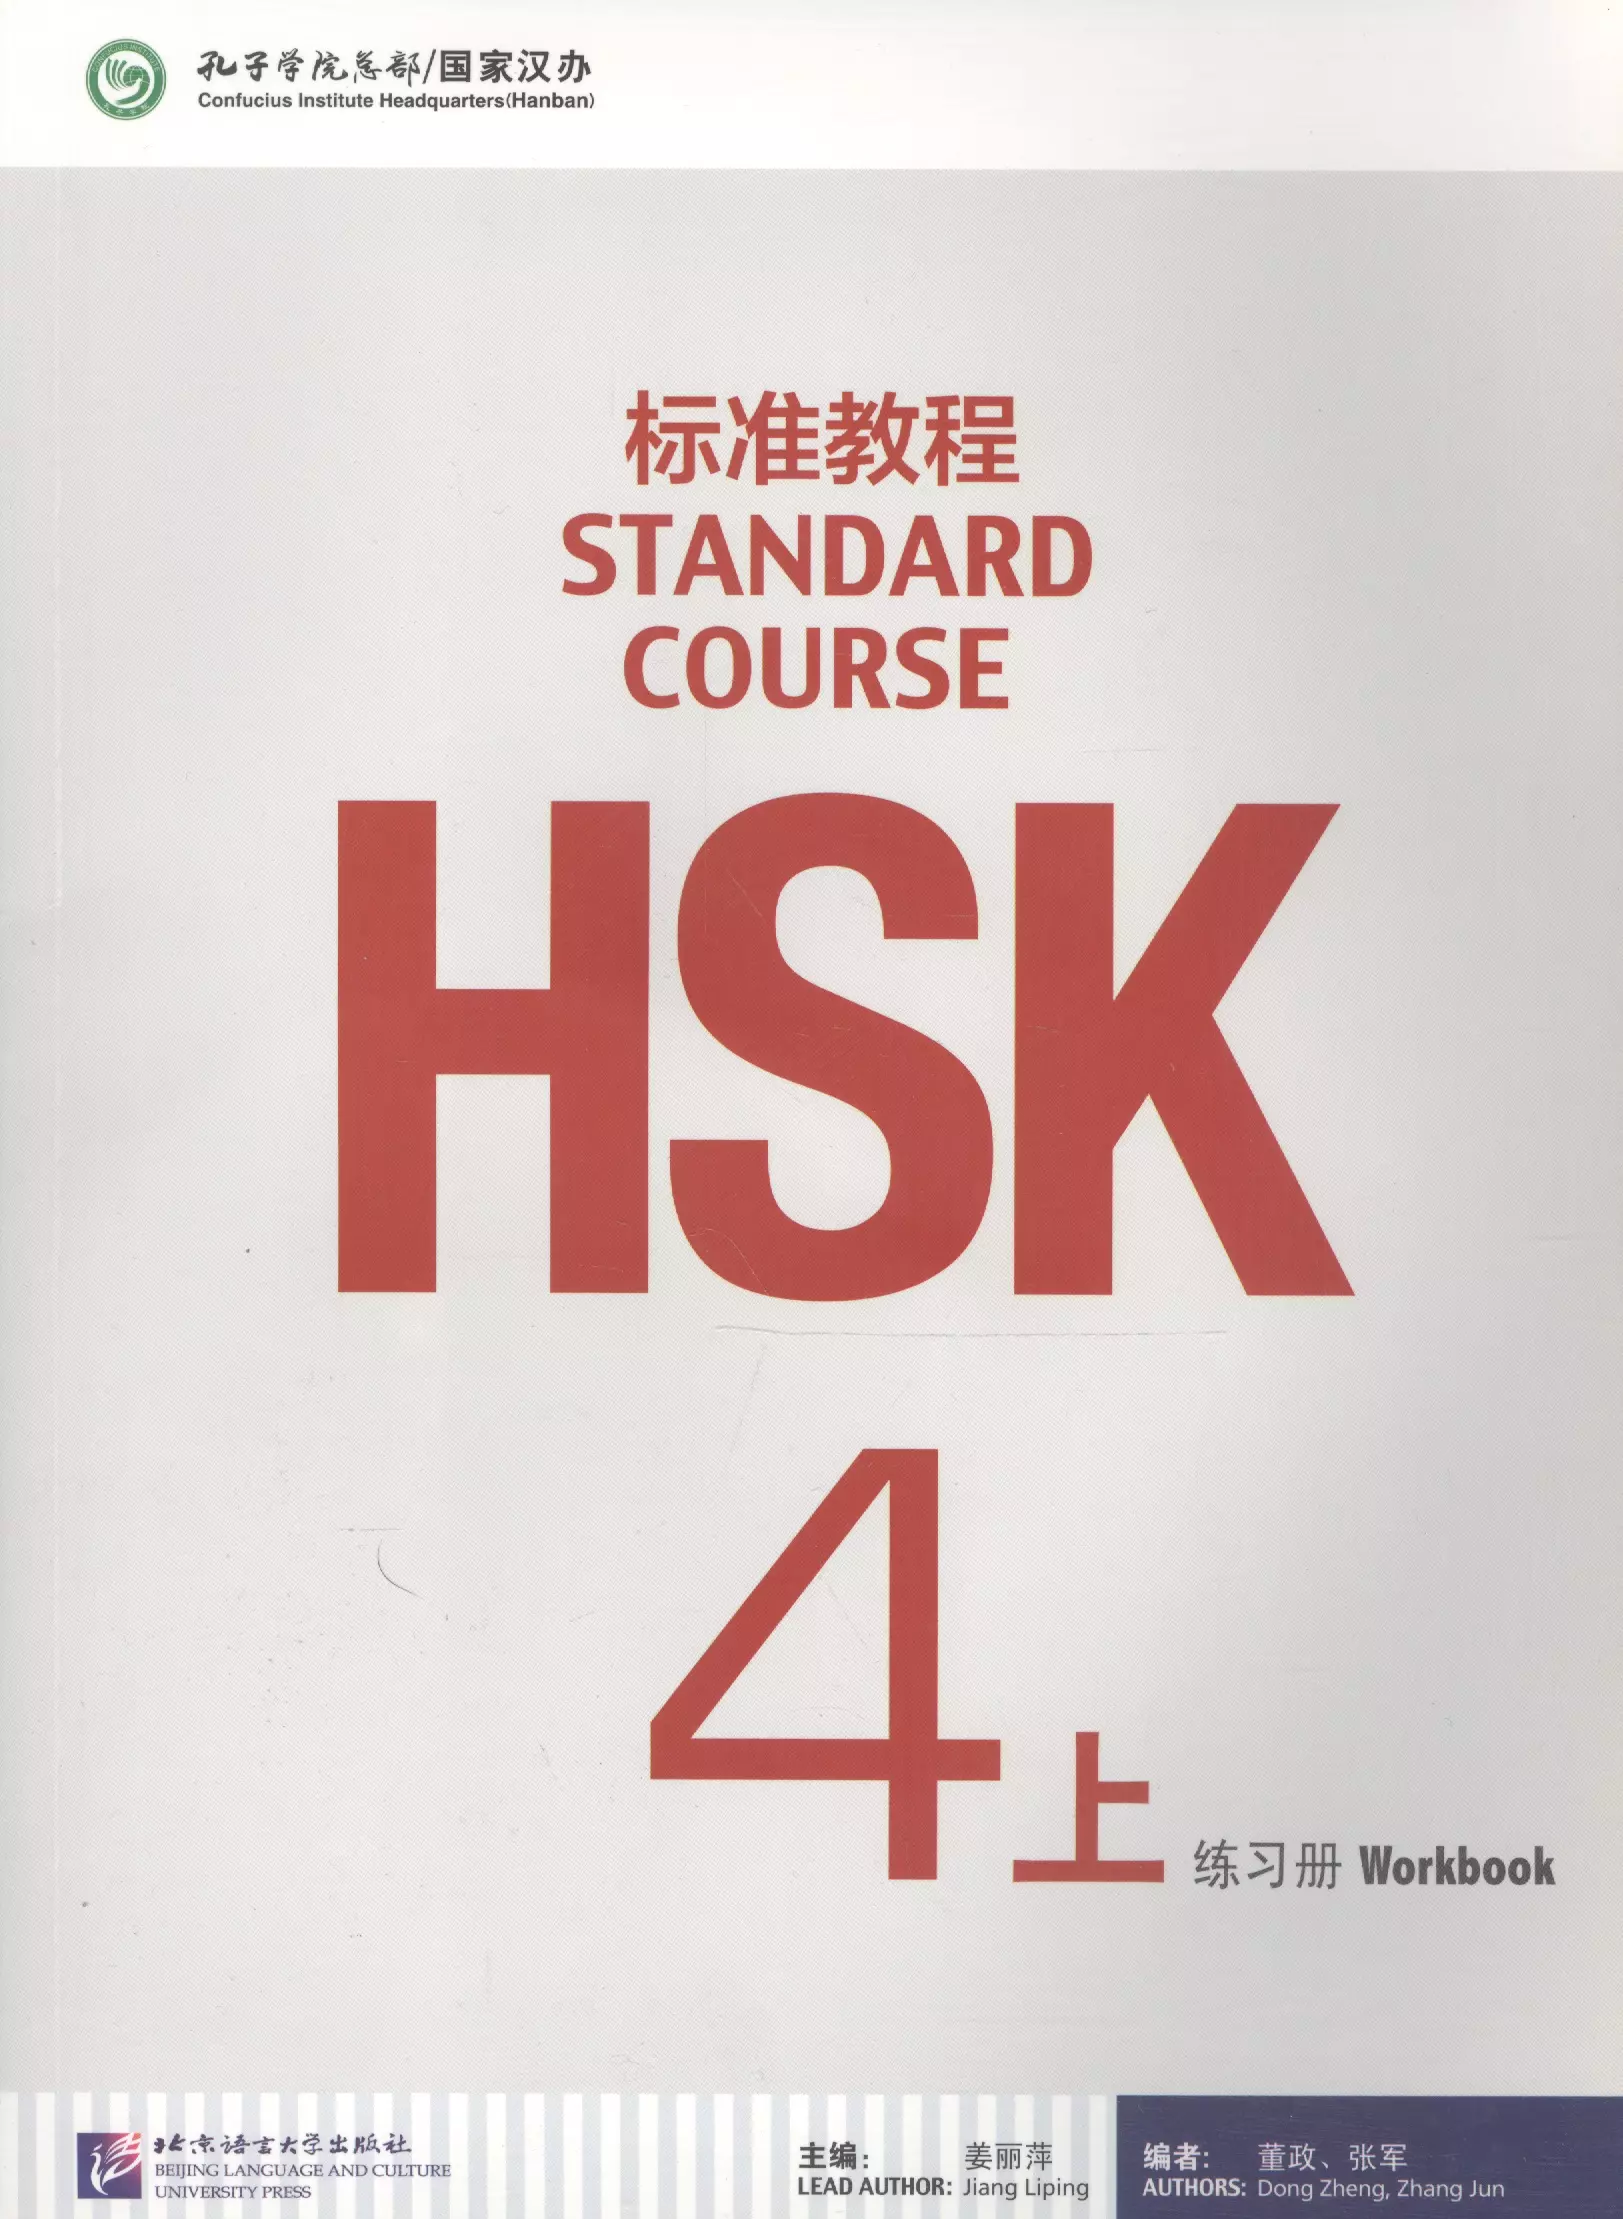 Zhang Jun, Dong Zheng, Jiang Liping - HSK Standard Course 4A - Workbook/ Стандартный курс подготовки к HSK, уровень 4 - рабочая тетрадь, часть A (на китайском языке)